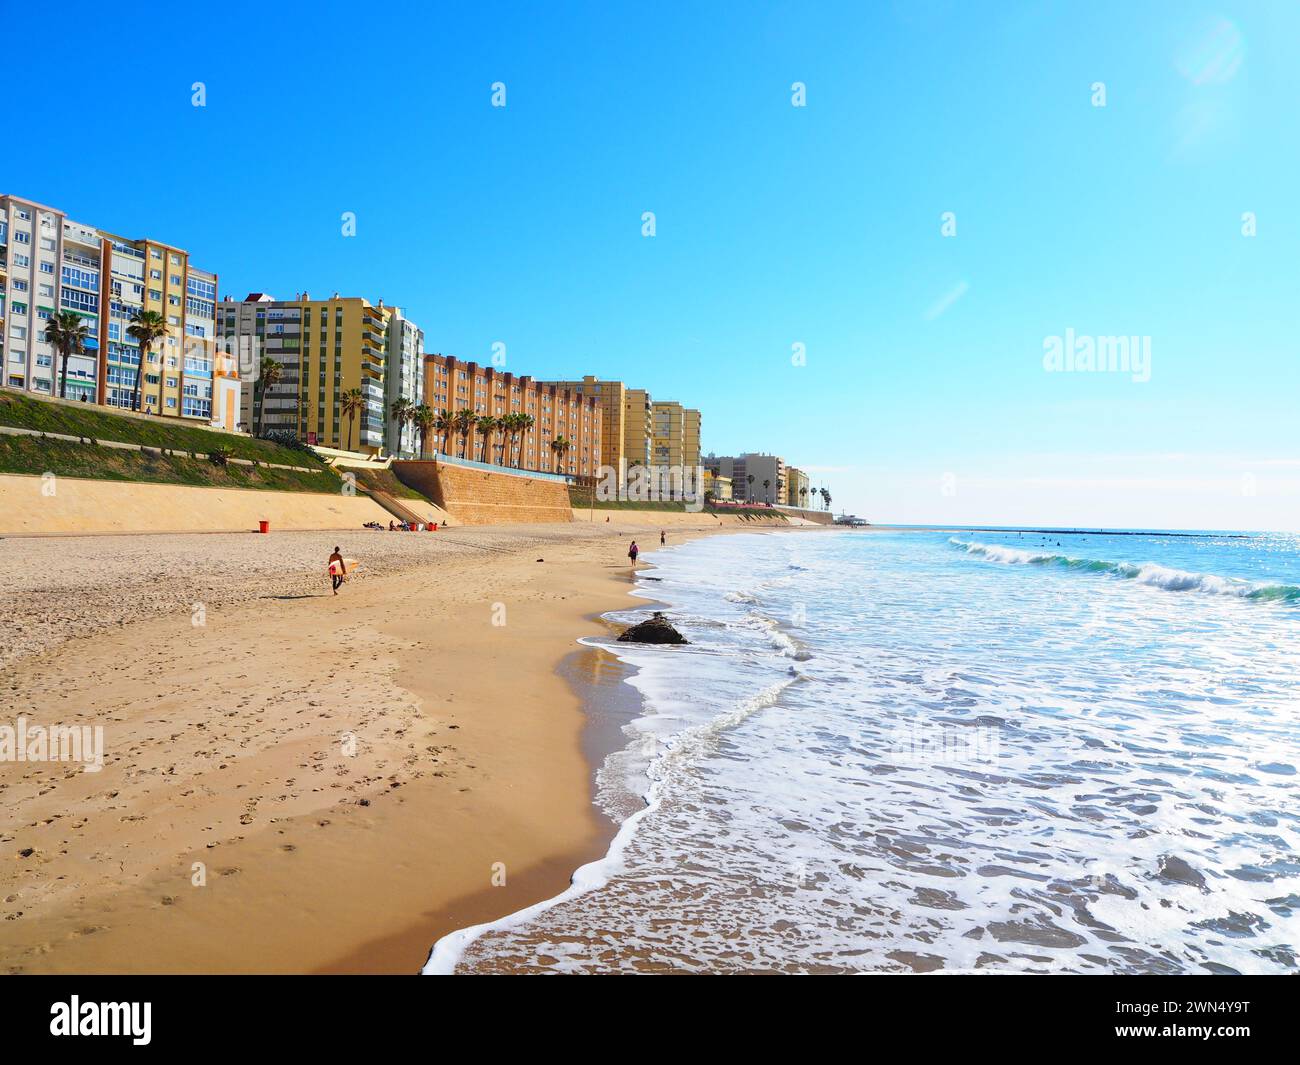 Beaches of Andalusia, Costa de la Luz, Cadiz, Spain Stock Photo